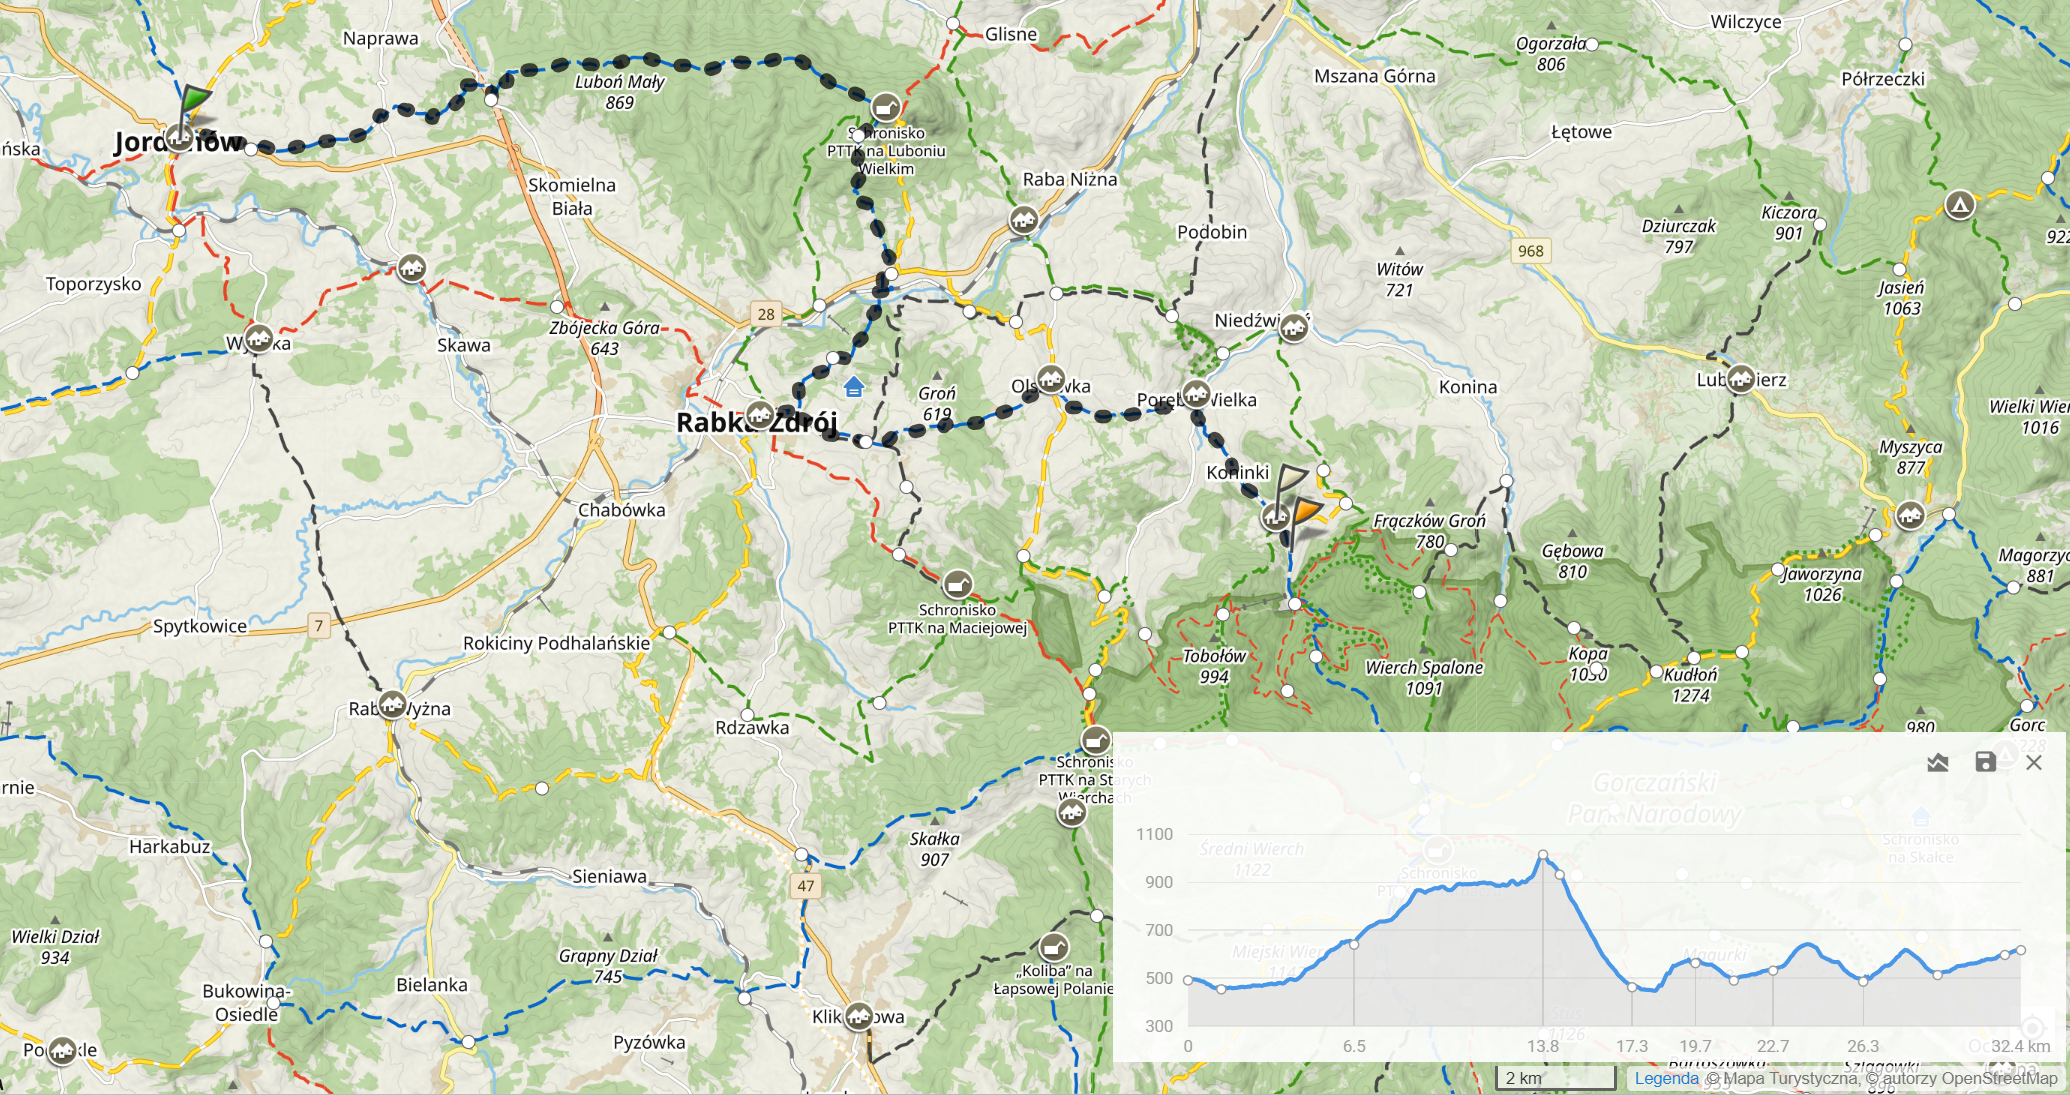 Niebieski szlak Brzeźnica - Kacwin, dzień 3: Jordanów - Koninki. (32,4km, 1161m sumy podejść)